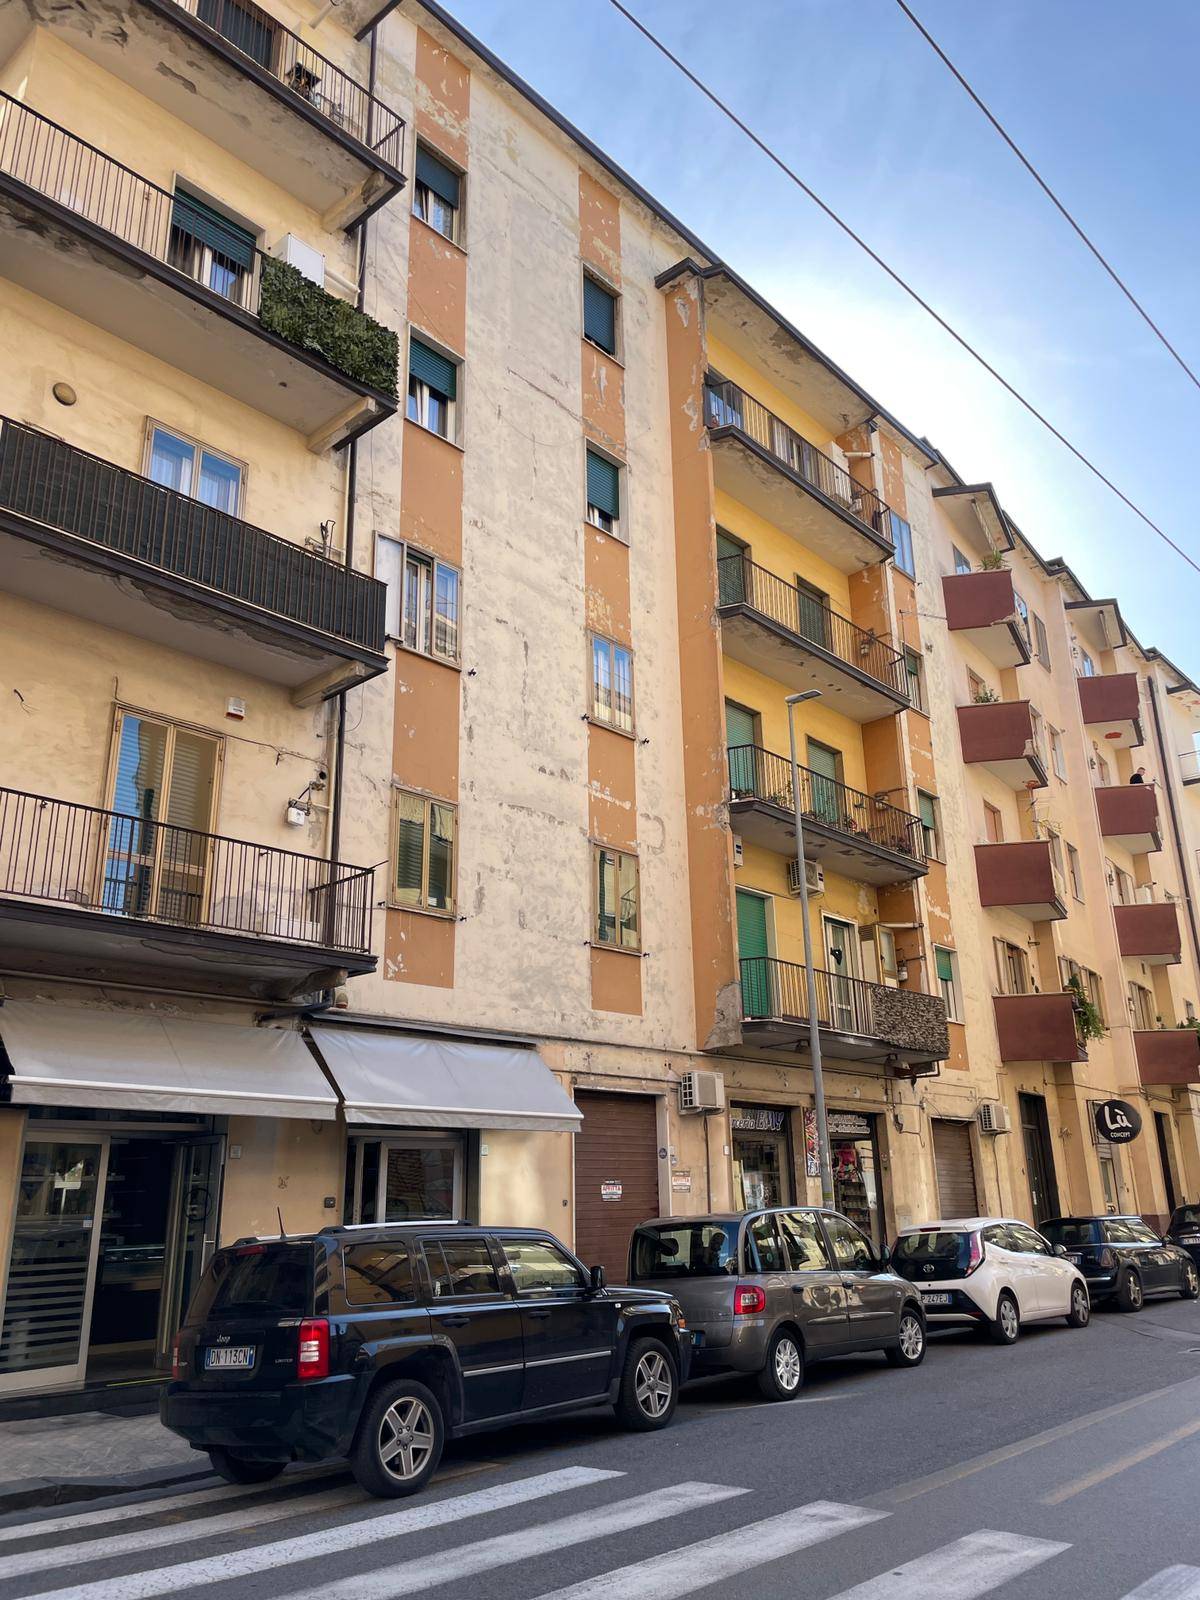 Locale commerciale in affitto, Avellino centro